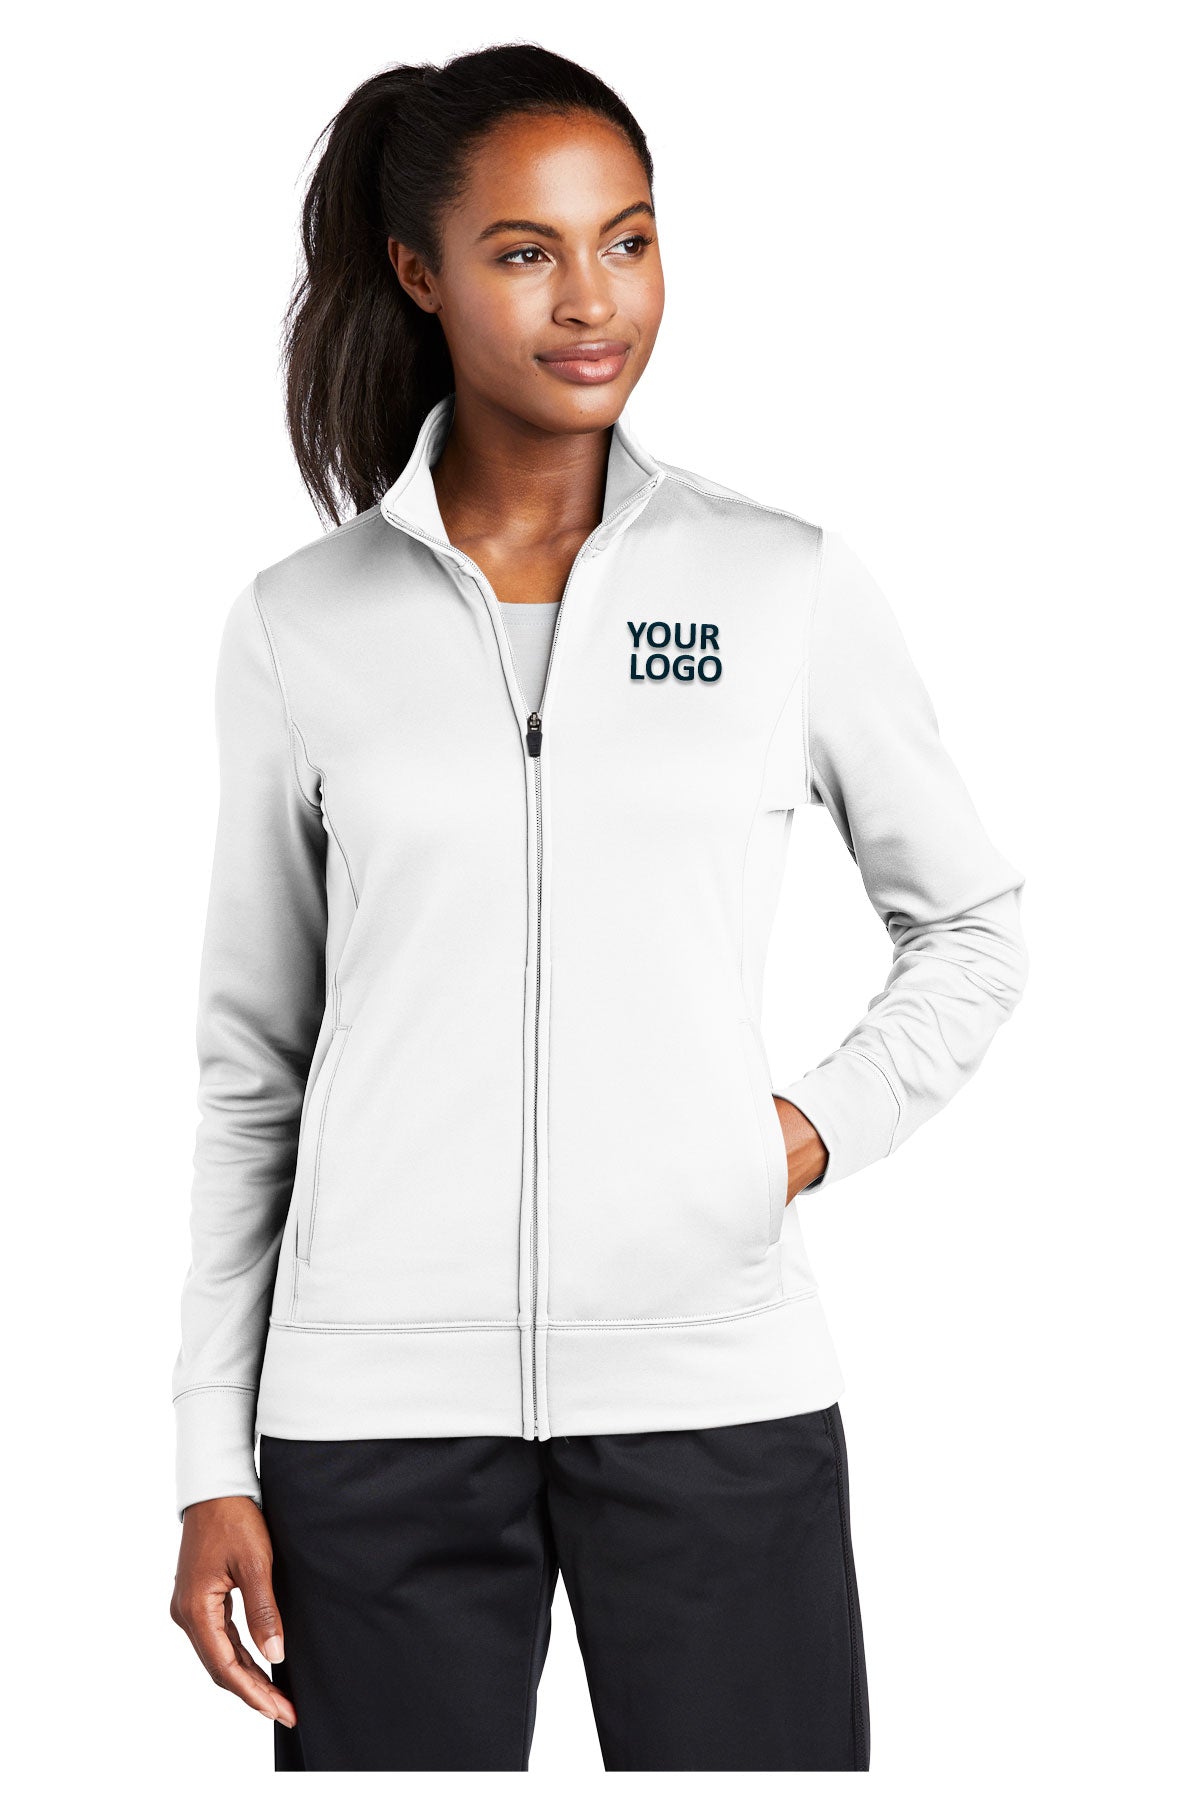 Sport-Tek Ladies Sport-Wick Fleece Customized Full-Zip Jackets, White